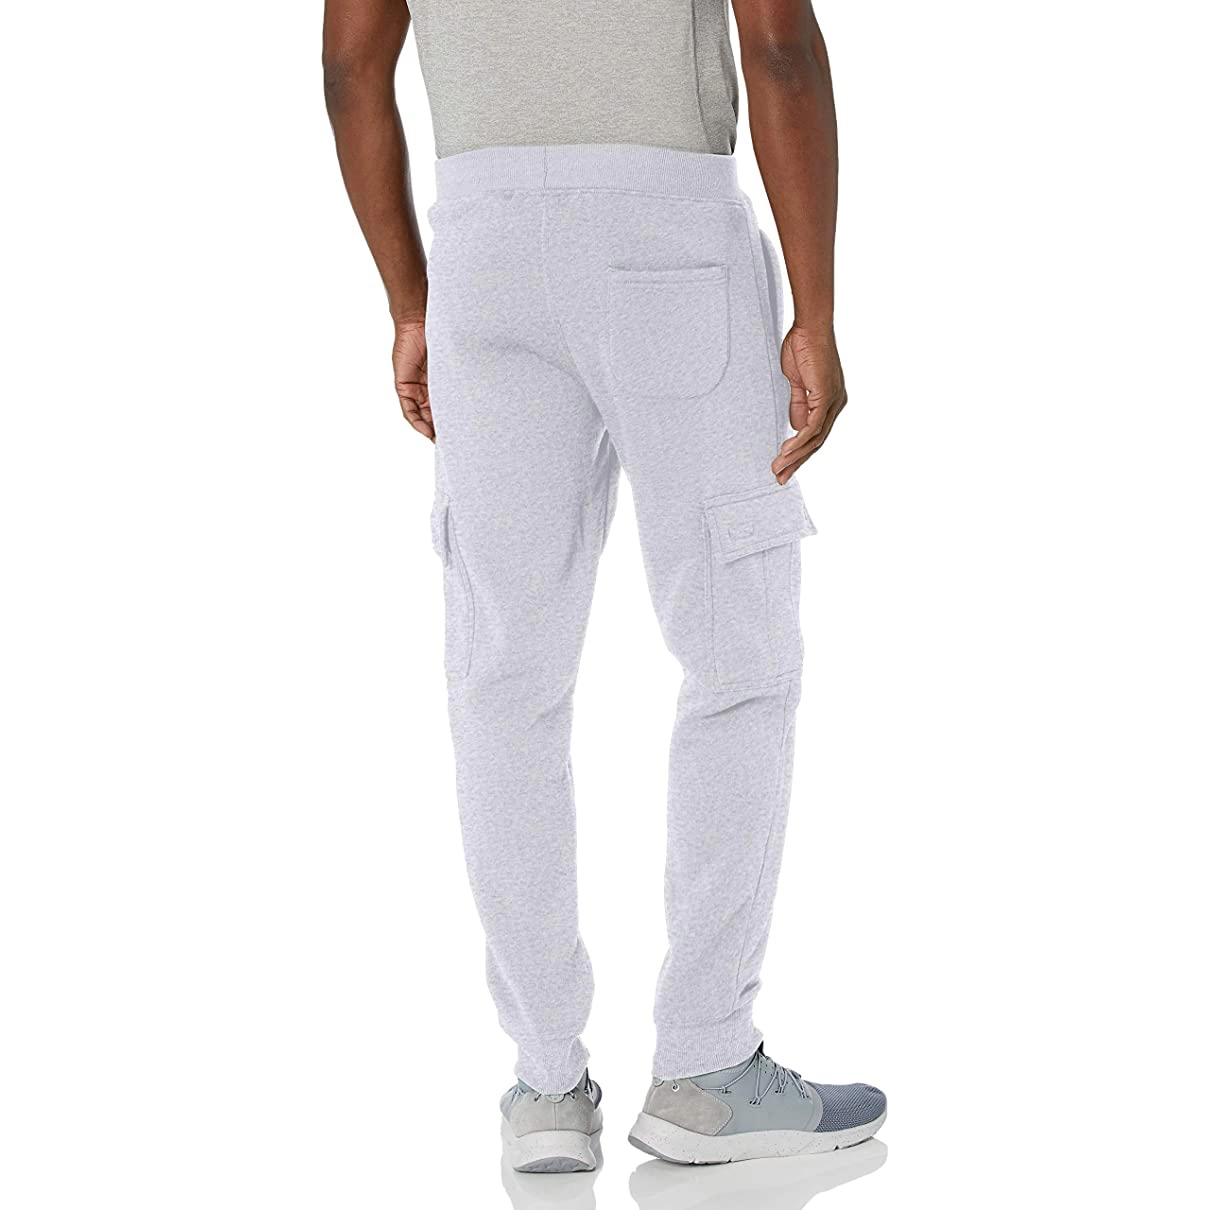 Calça de moletom masculina básica jogger com cordão para treino de corrida calça atlética